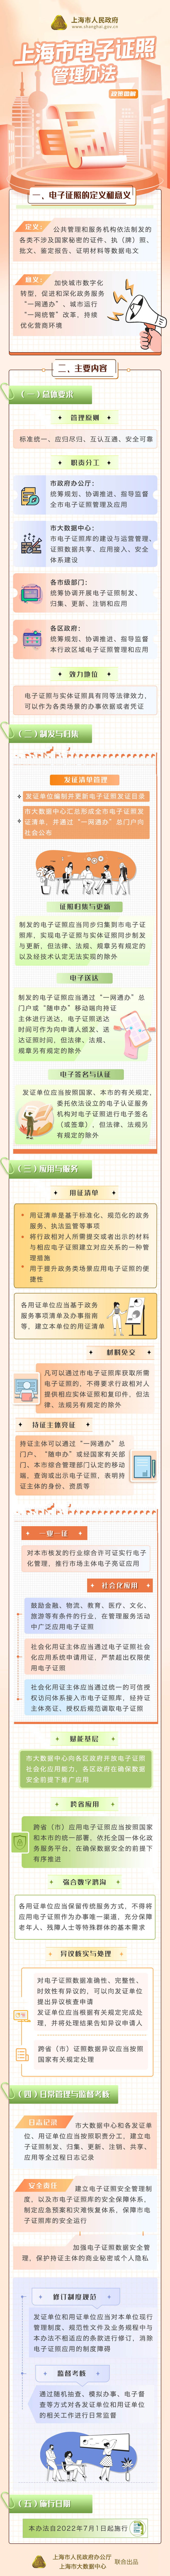 上海市電子證照管理辦法